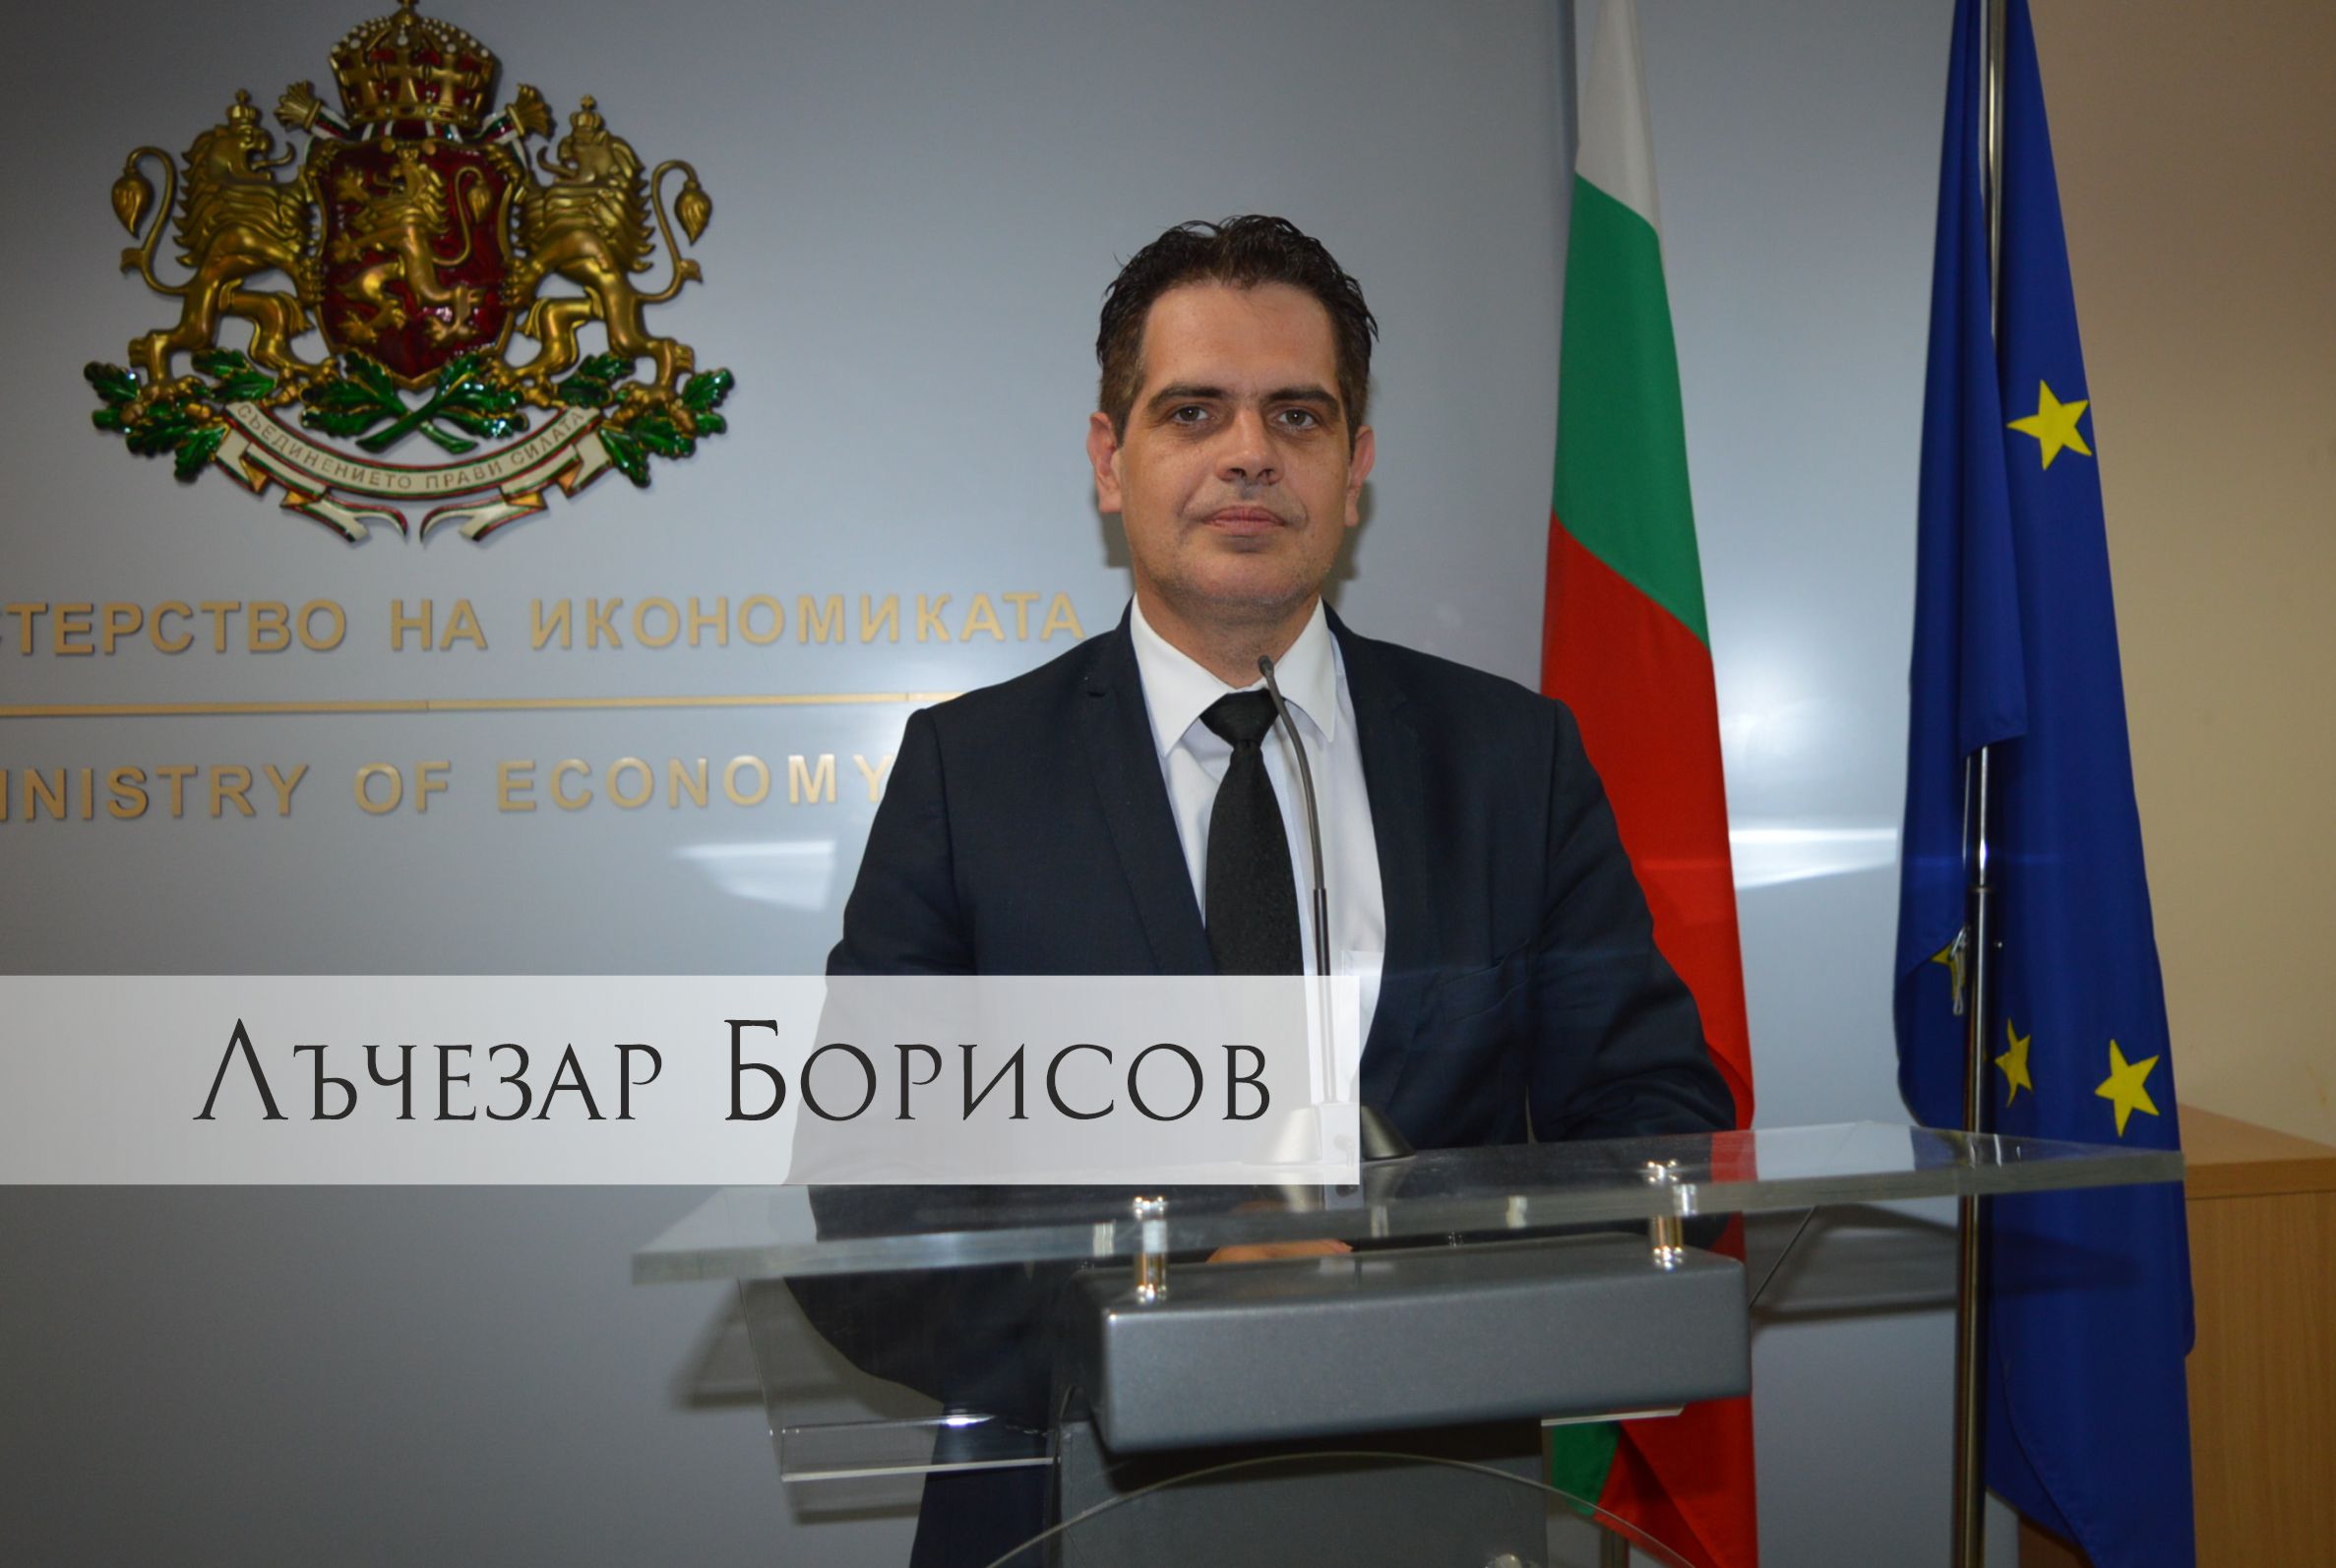 Лъчезар Борисов, министър на икономиката: Кризата е шанс да трансформираме икономиката си